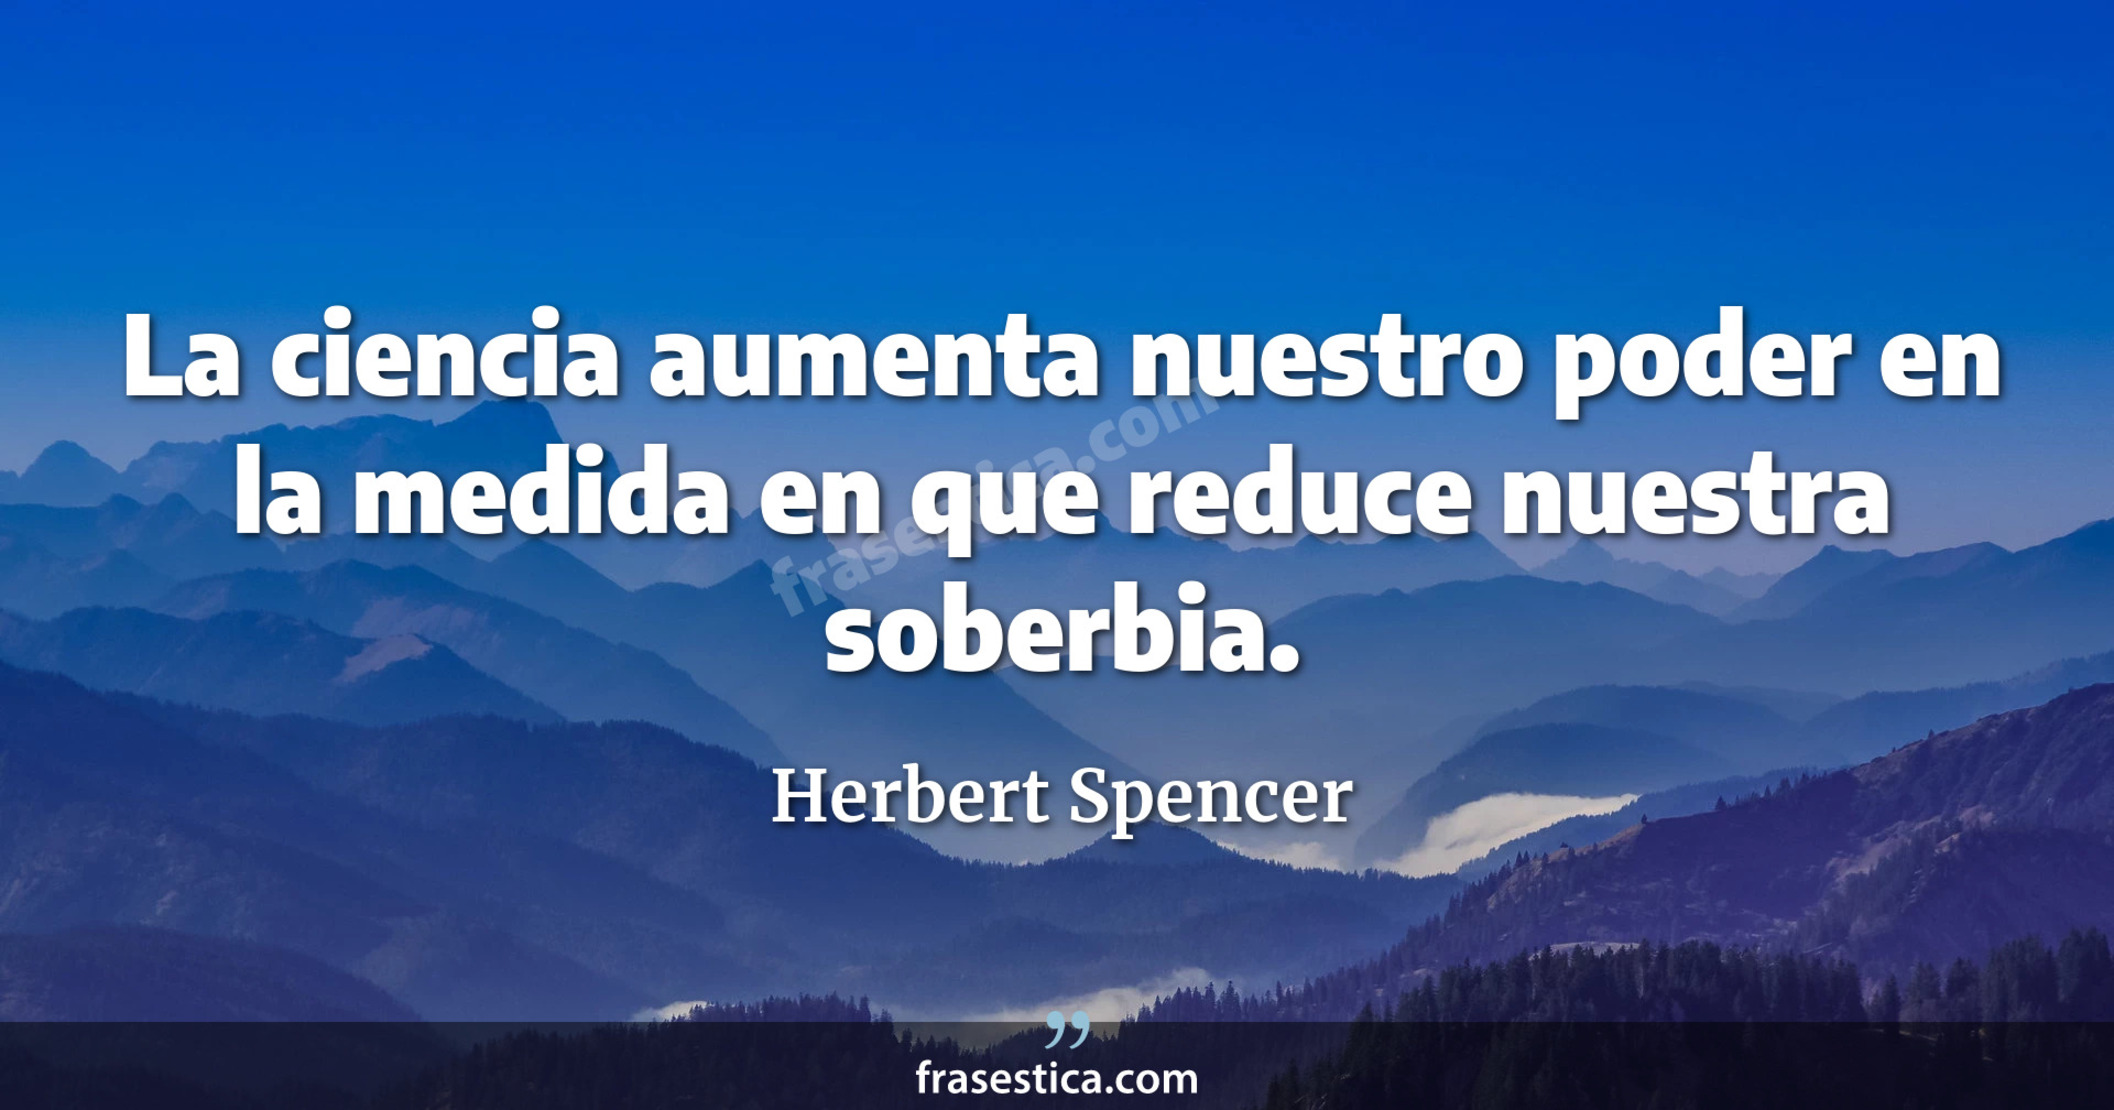 La ciencia aumenta nuestro poder en la medida en que reduce nuestra soberbia. - Herbert Spencer